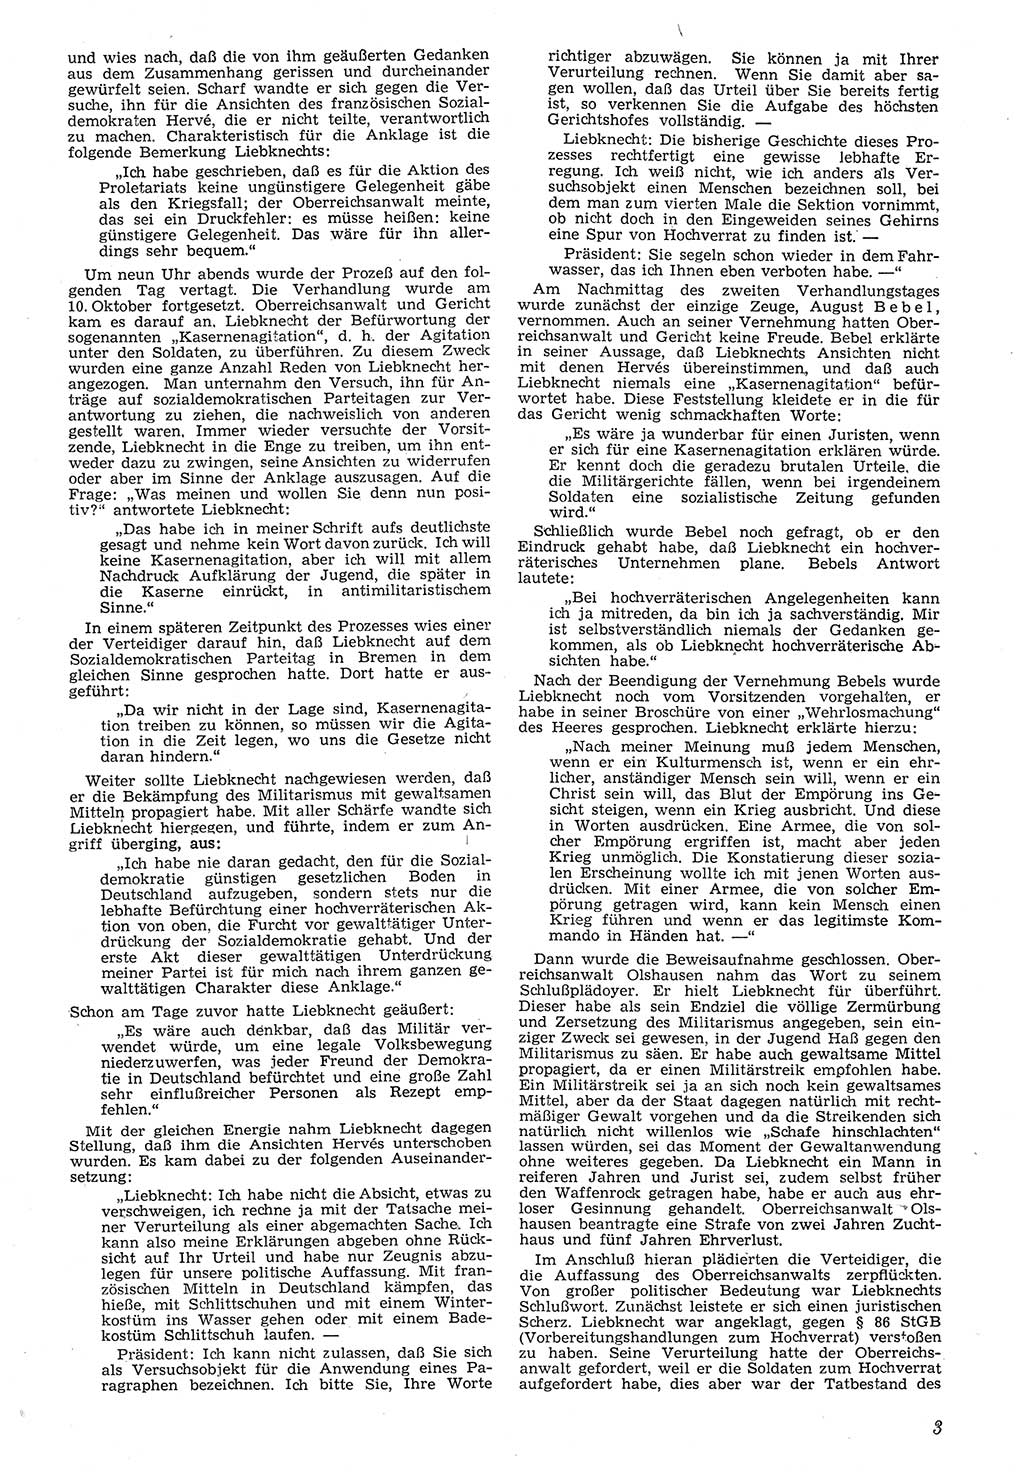 Neue Justiz (NJ), Zeitschrift für Recht und Rechtswissenschaft [Deutsche Demokratische Republik (DDR)], 7. Jahrgang 1953, Seite 3 (NJ DDR 1953, S. 3)